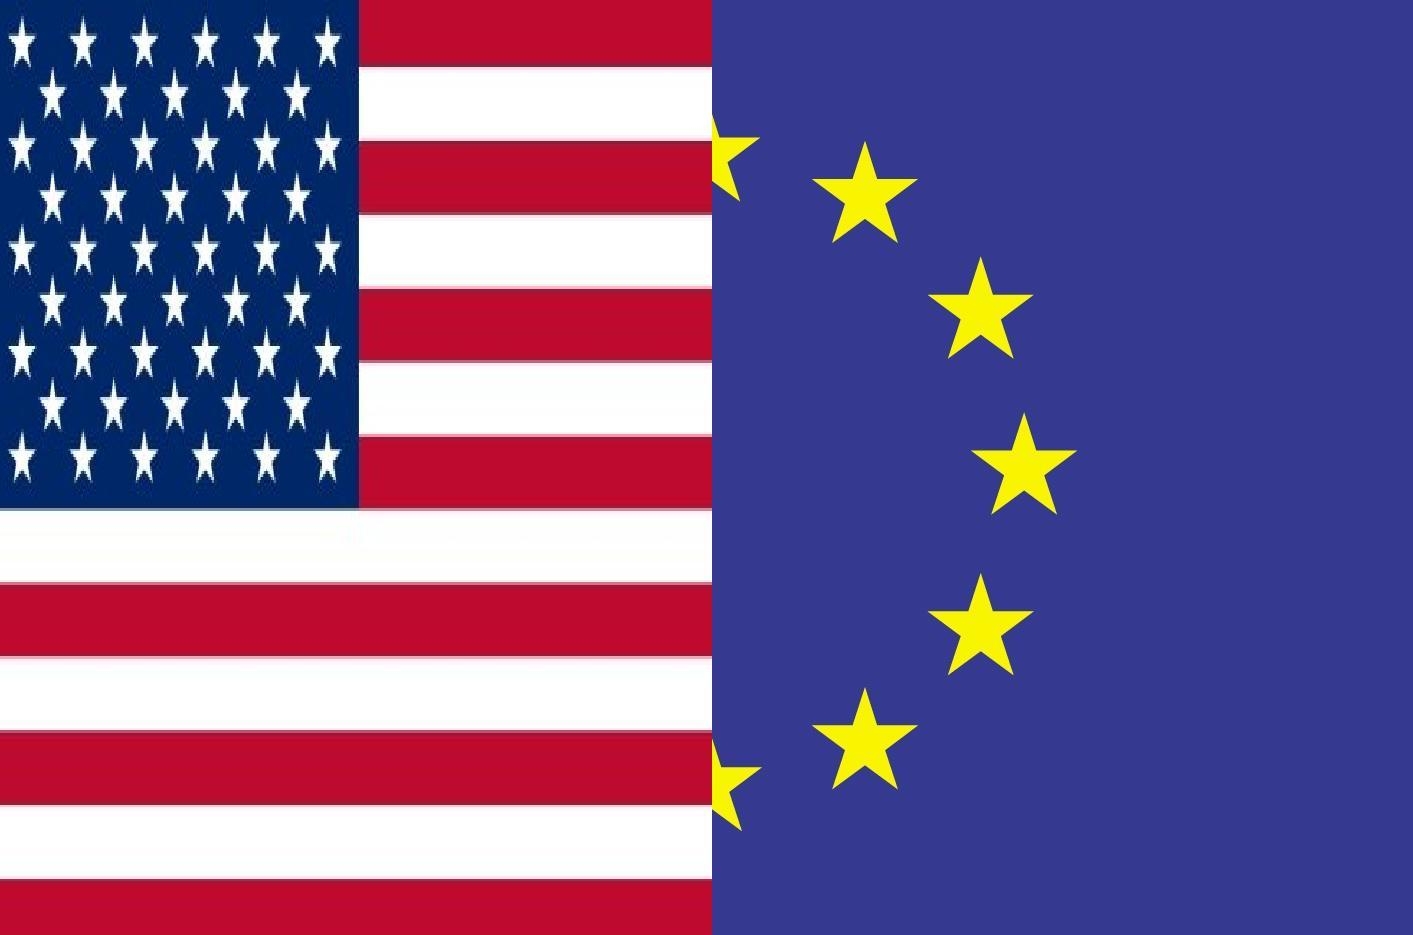 трансатлантическое партнерство США